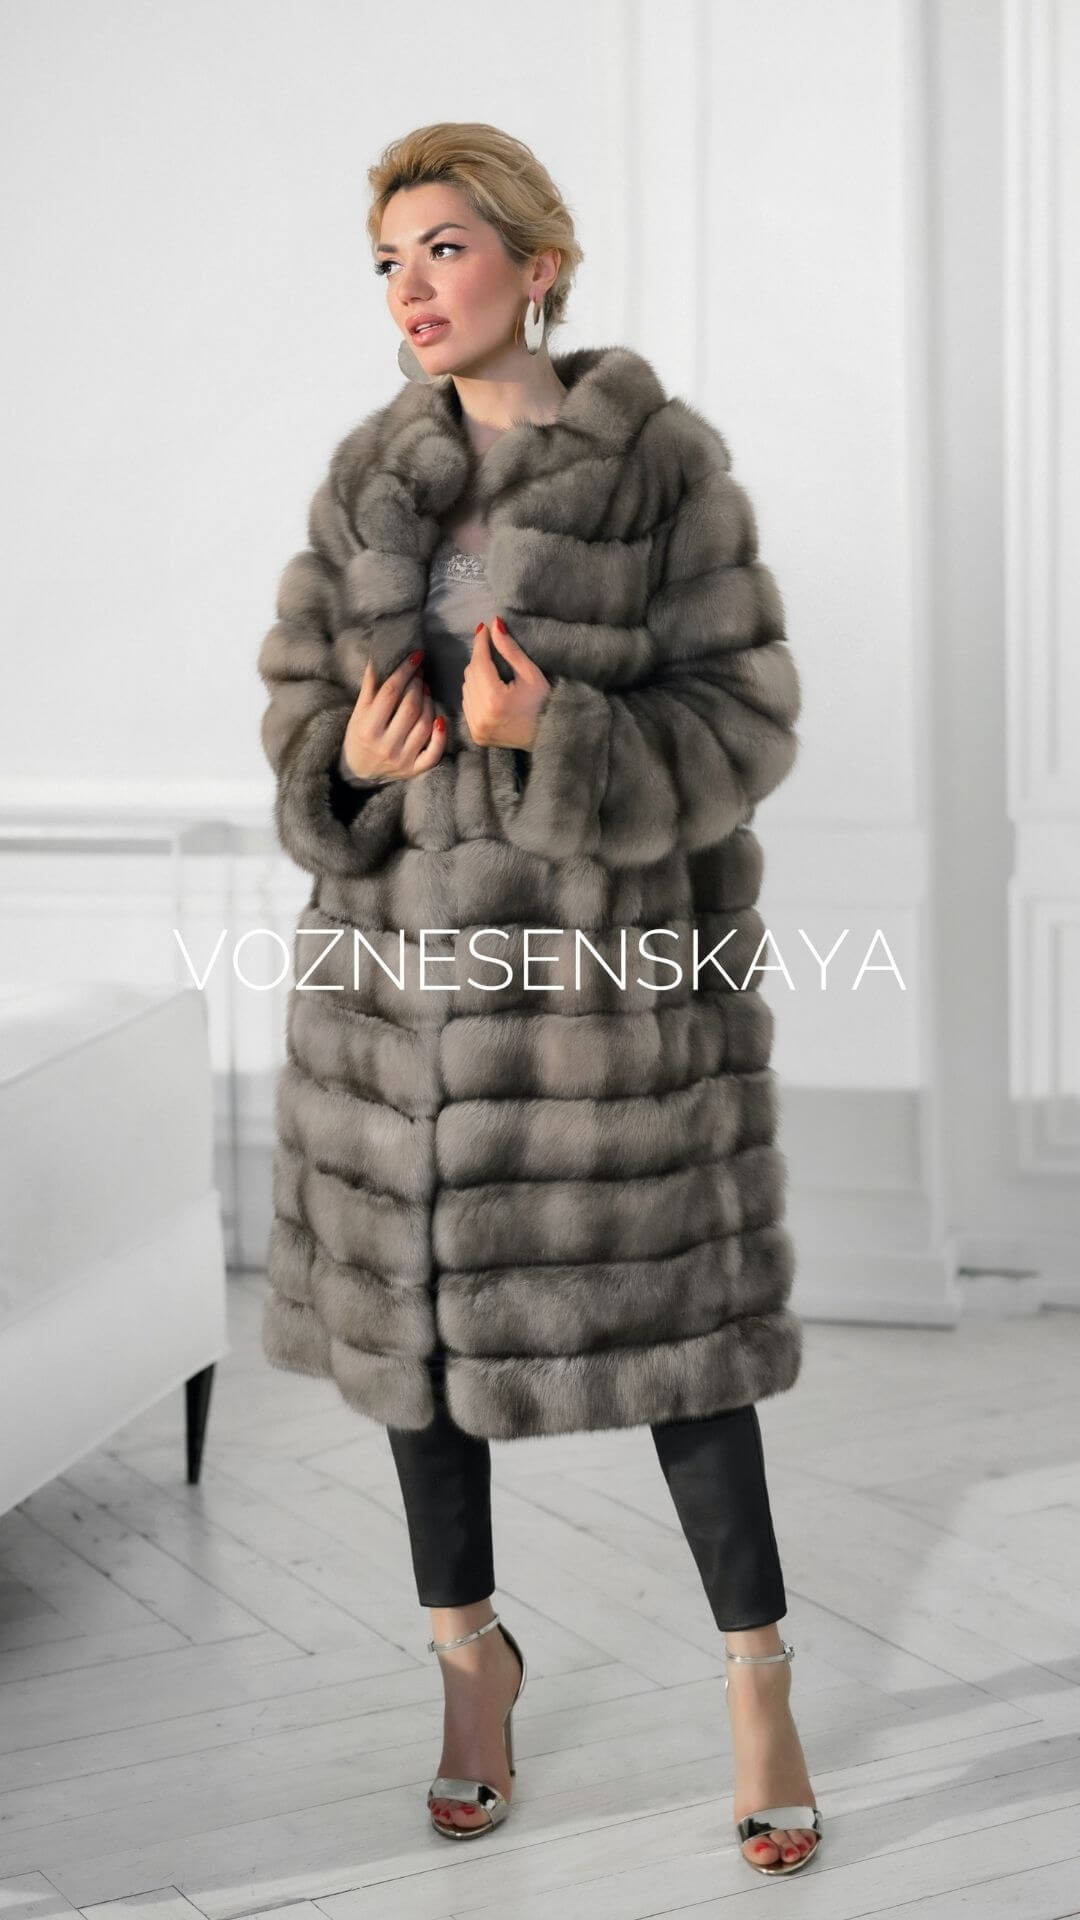 Alteration of fur coats